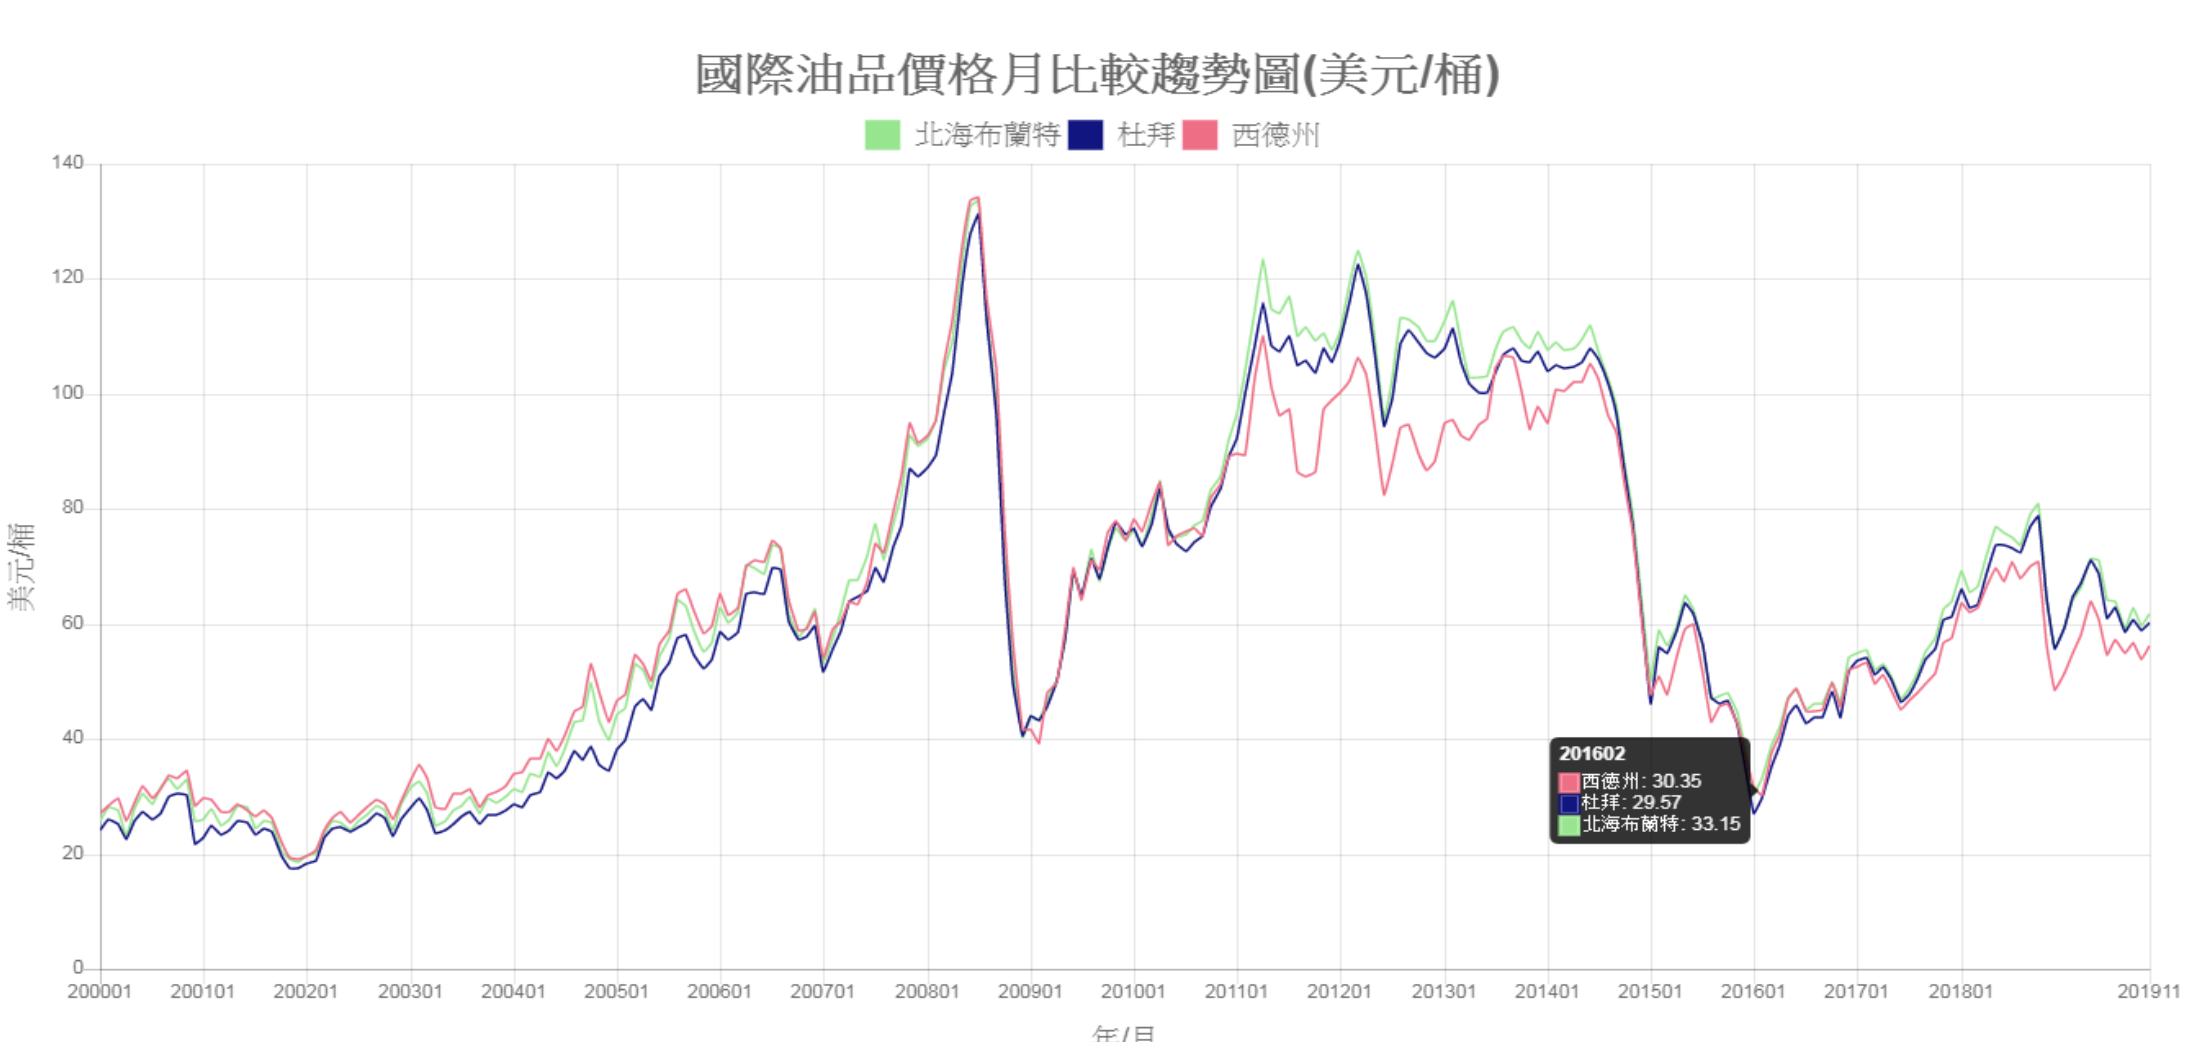 國際油品價格月比較趨勢圖